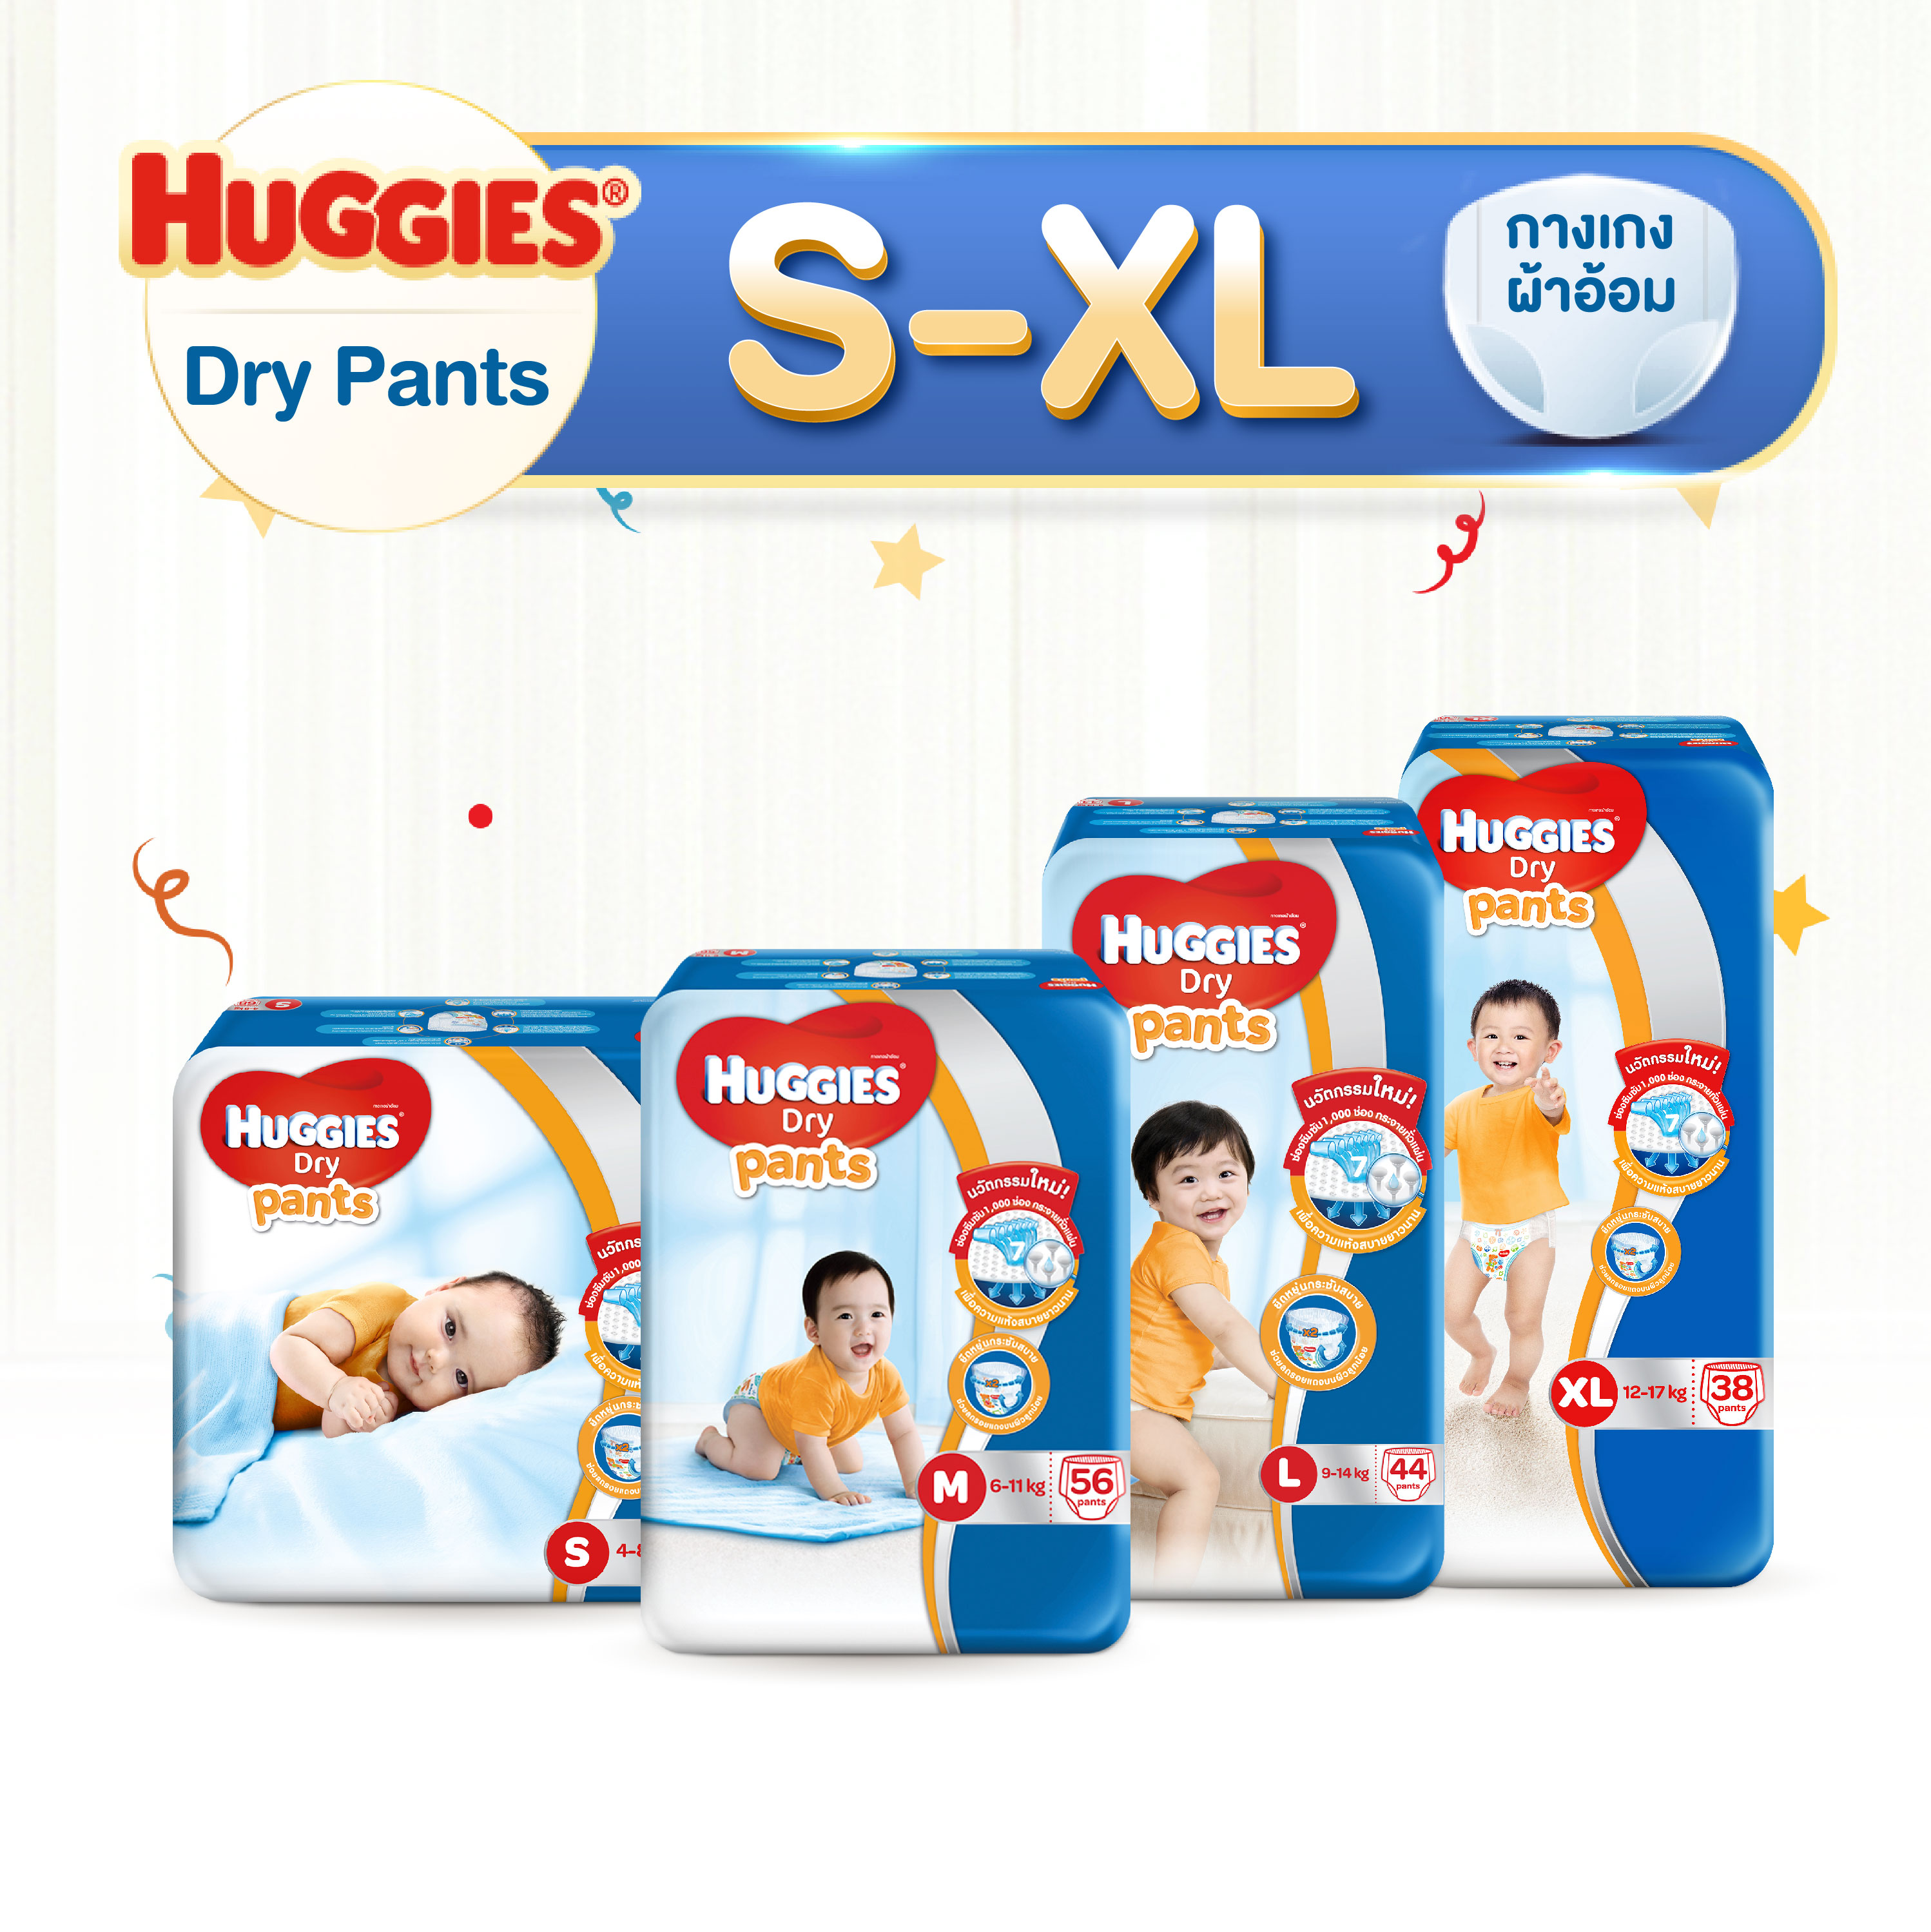 โปรโมชั่น (เลือกไซส์ด้านใน) Huggies Dry Pant Diapers ฮักกี้ส์ ดราย แพ้นท์ ผ้าอ้อมเด็ก กางเกงผ้าอ้อม แพมเพิส ผ้าอ้อมเด็กชาย - หญิง